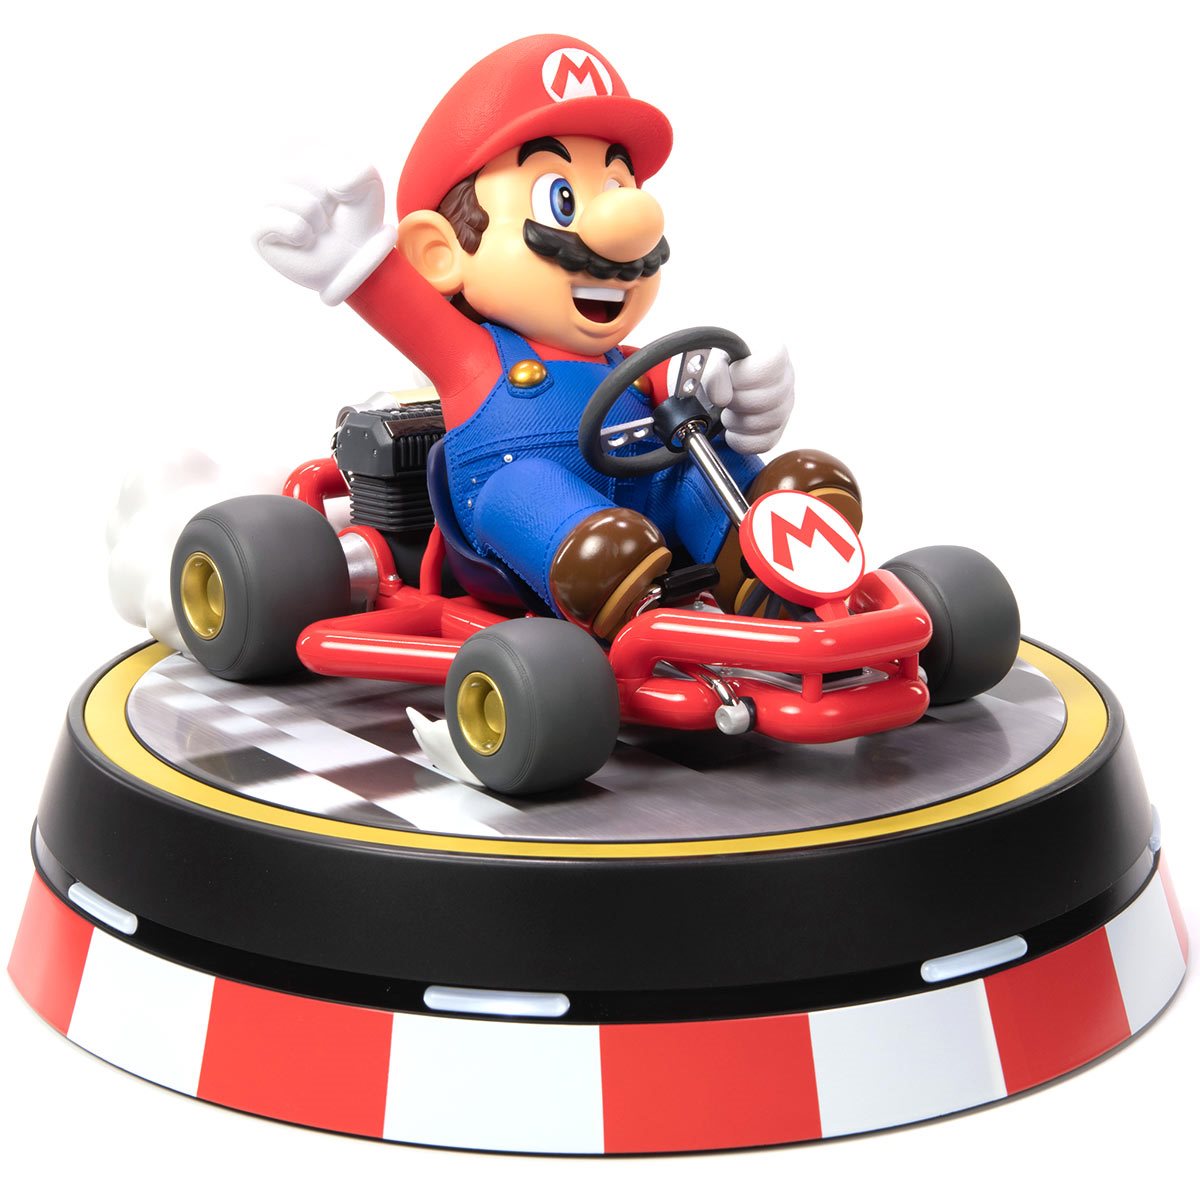 First 4 Figures - Mario Kart - MARIO Collector's Edition PVC